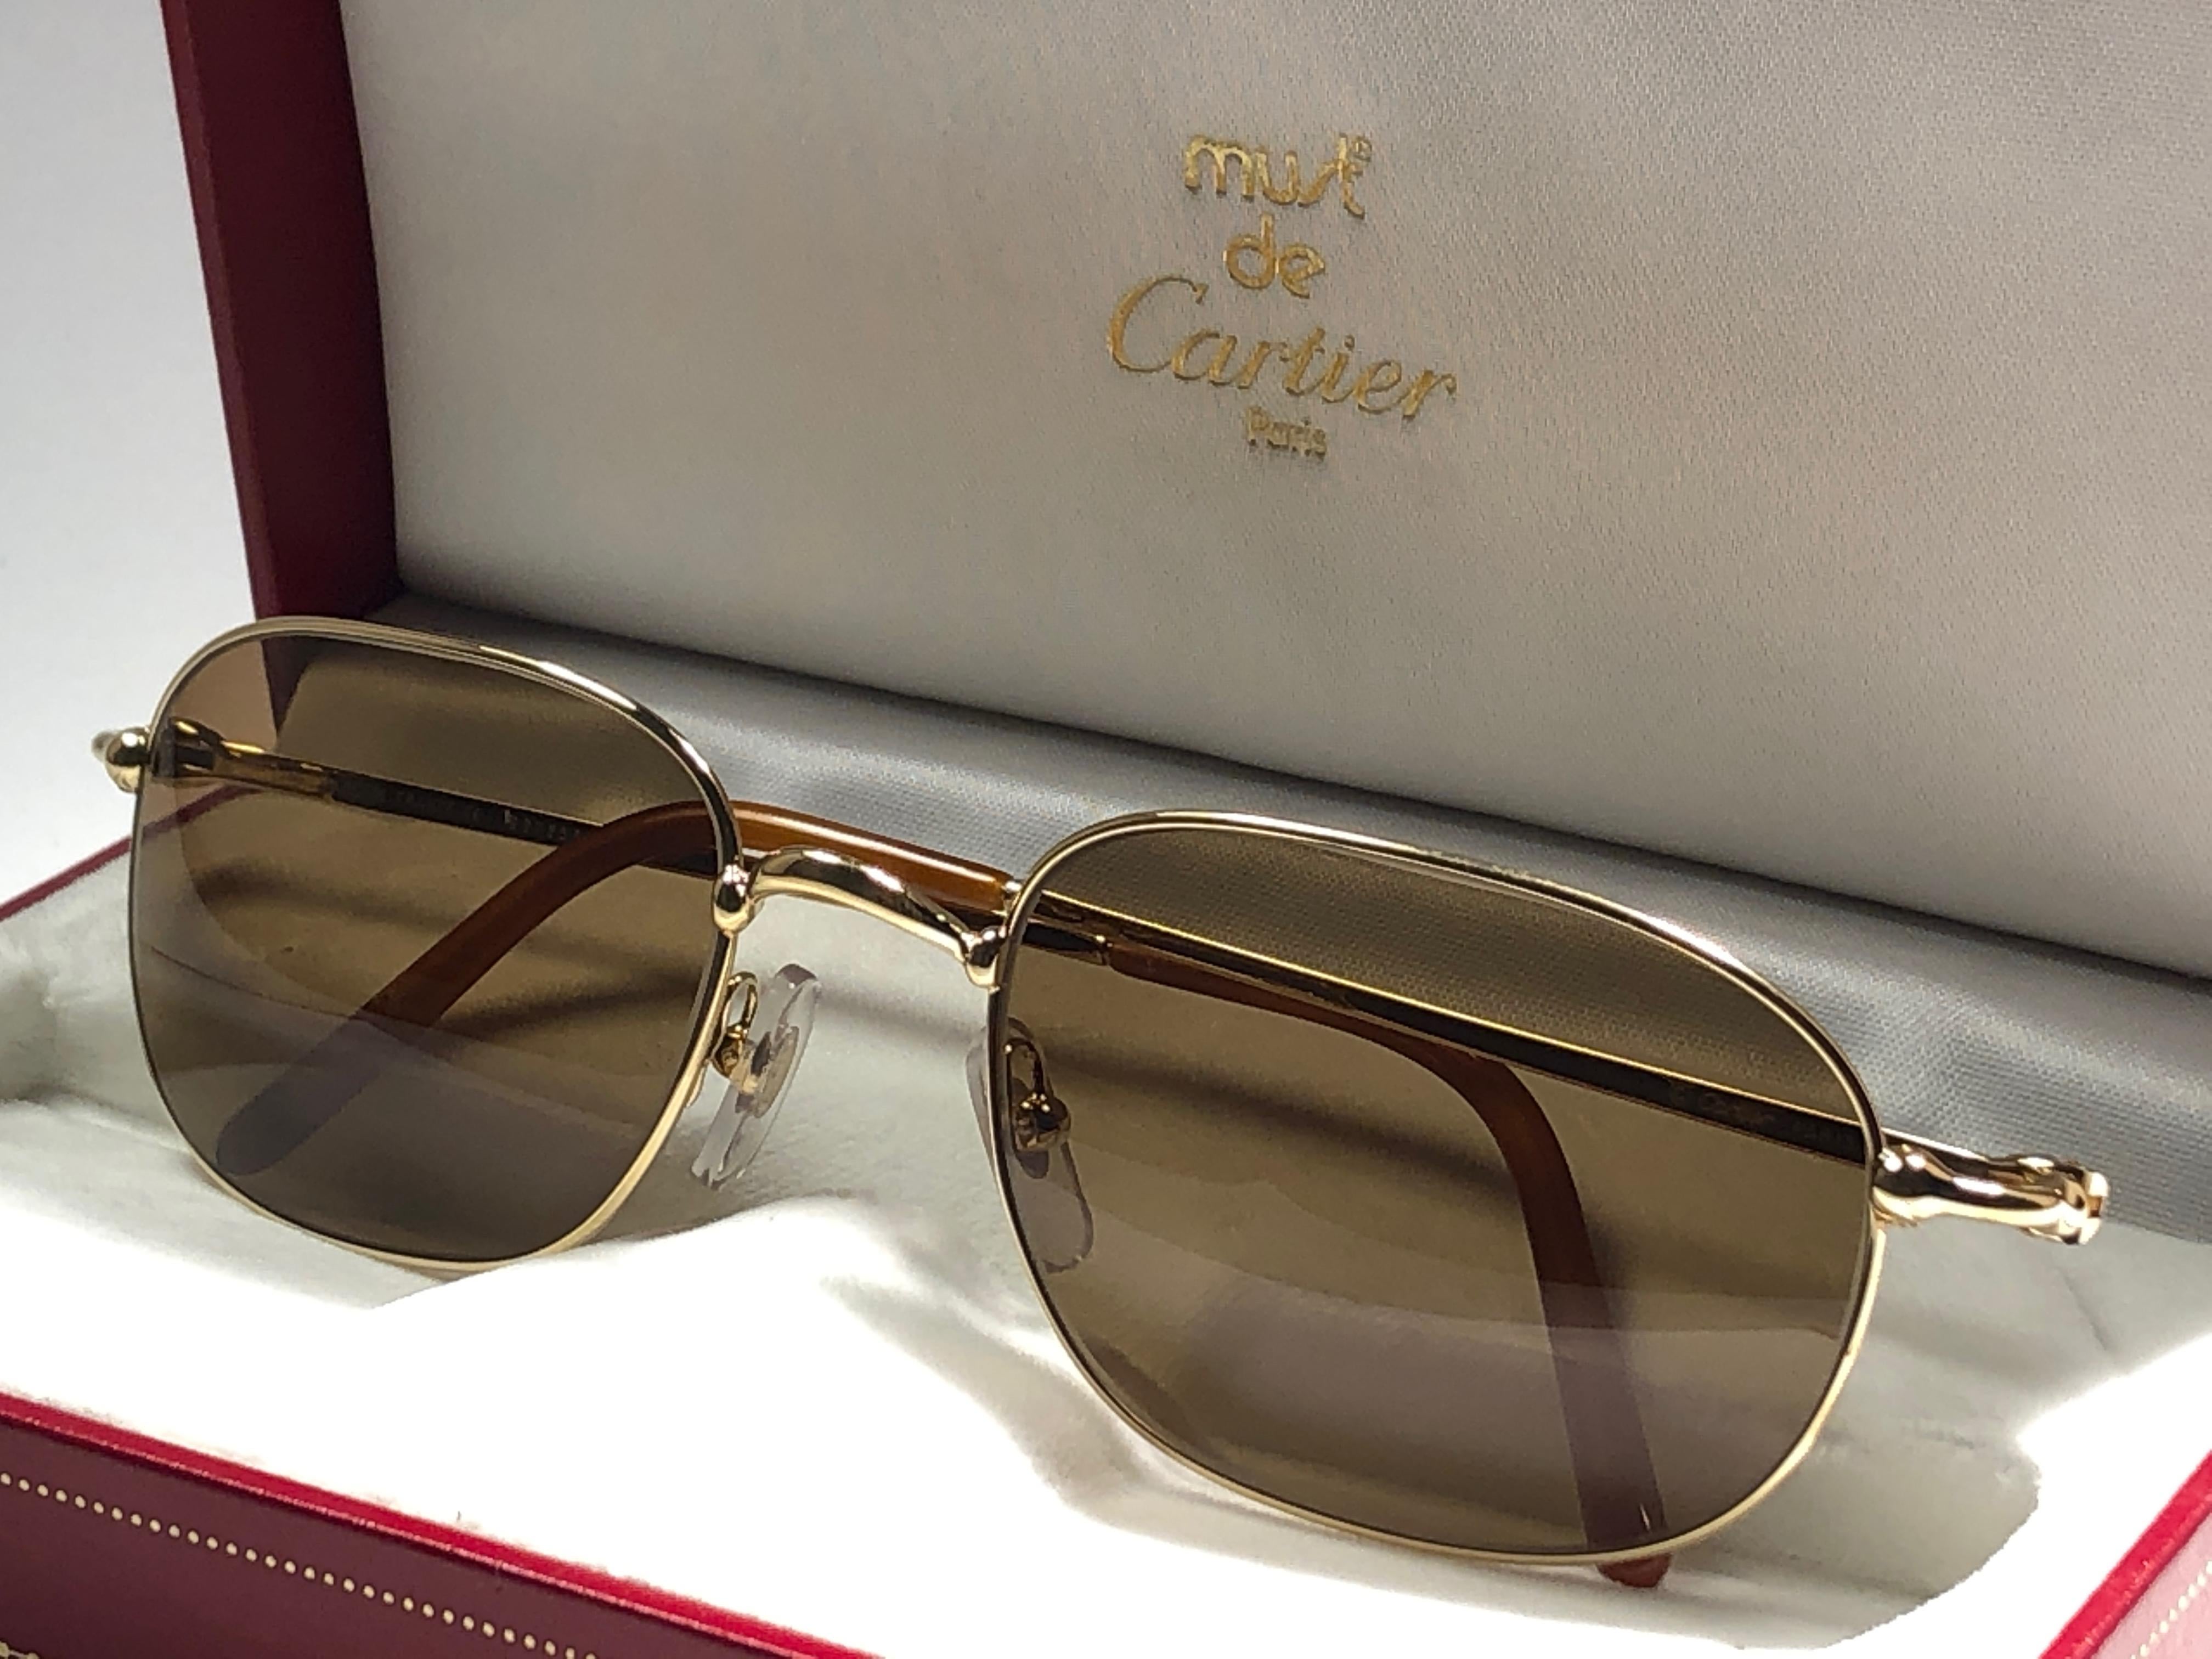 New Vintage Cartier Vesta 56mm Gold Plated Frame France 1990 Sunglasses 4